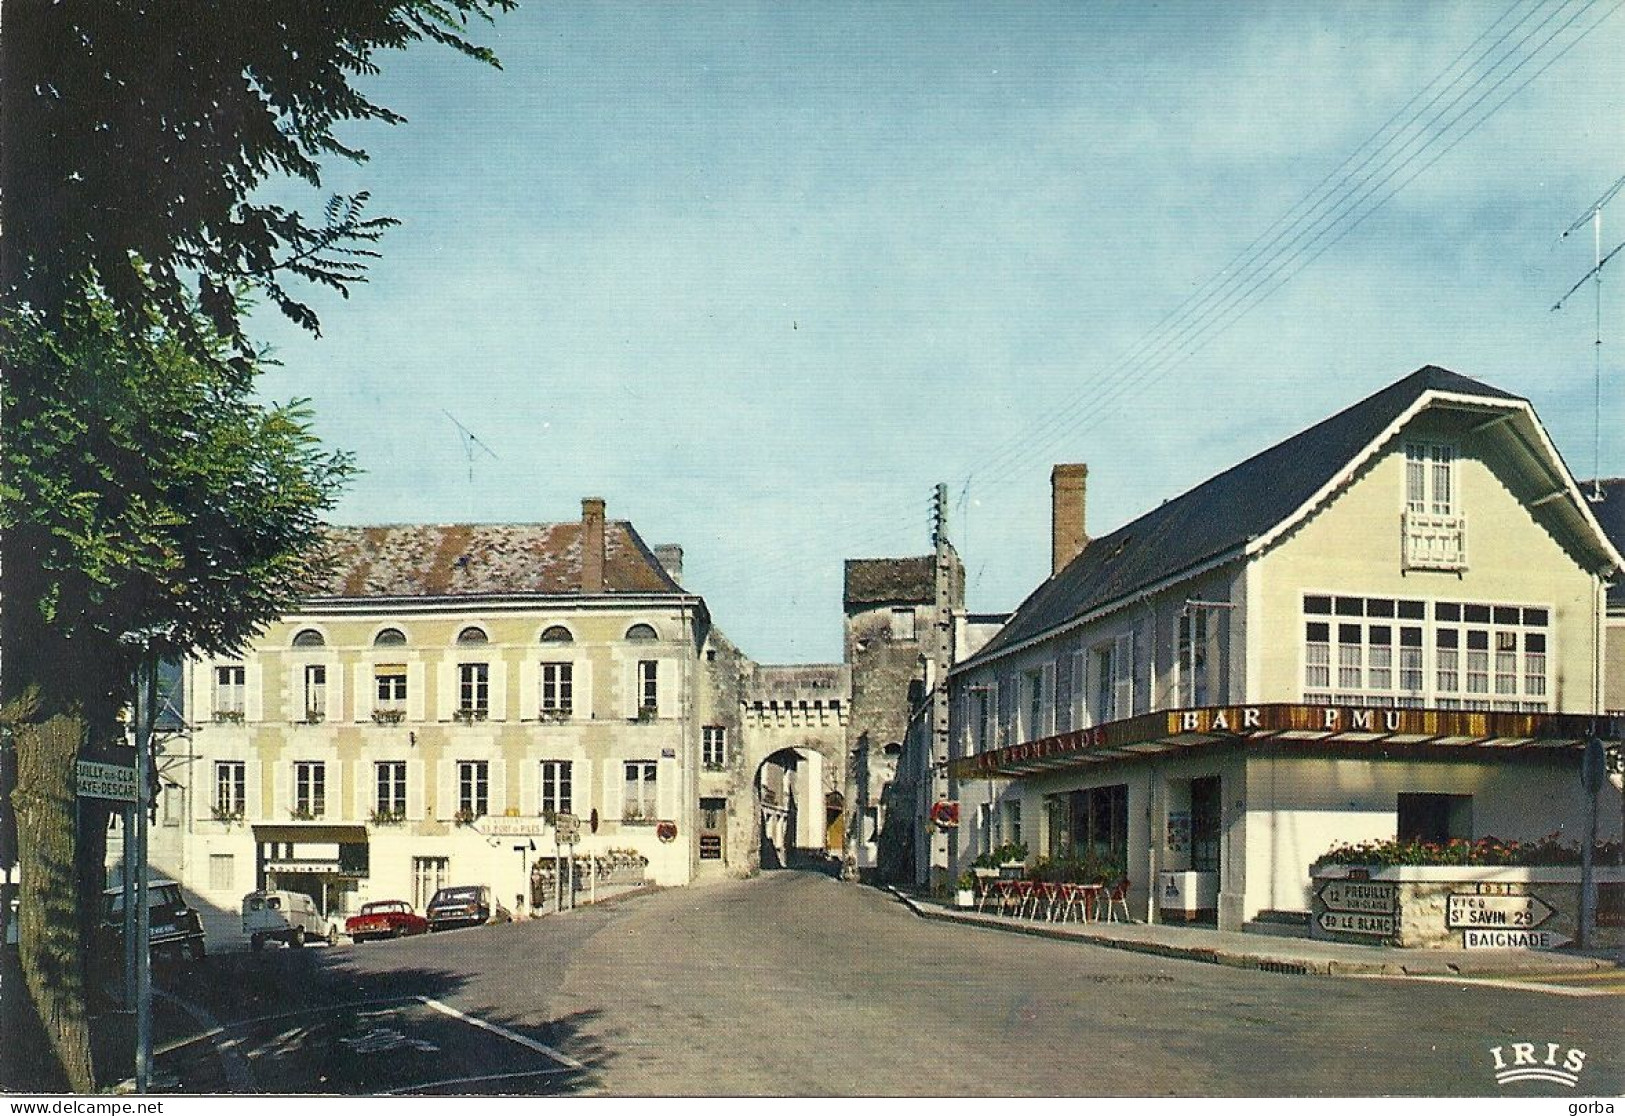 *CPM - 86 - LA ROCHE POSAY - Cours Pasteur Et La Porte De Ville - La Roche Posay